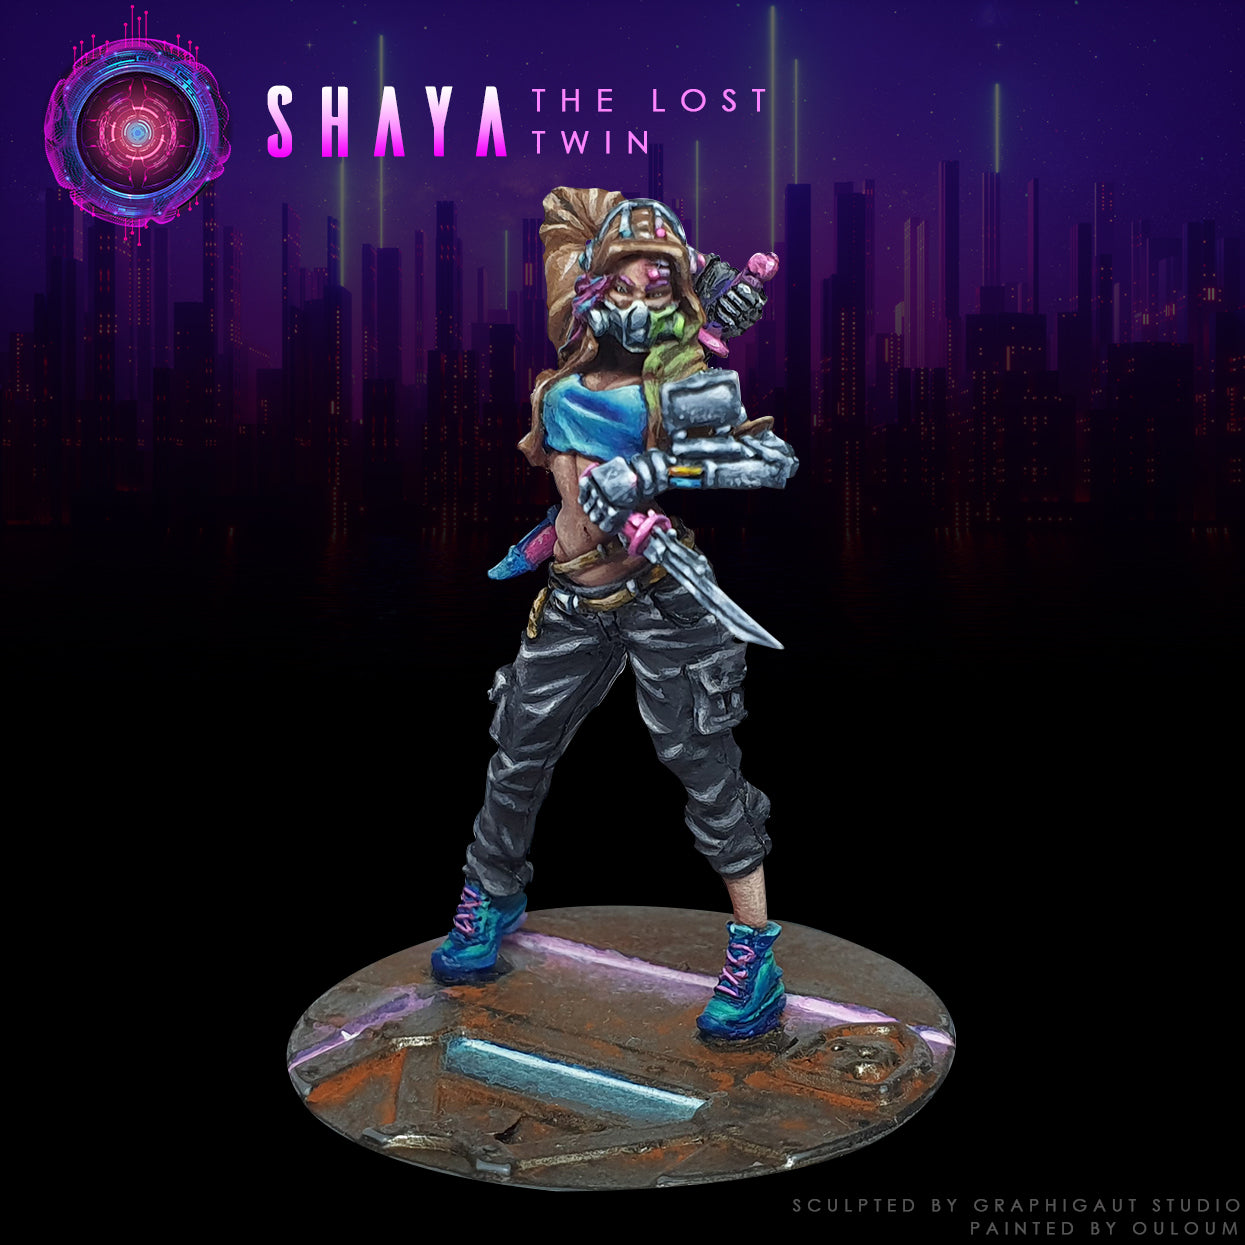 Shaya : The Lost Twin